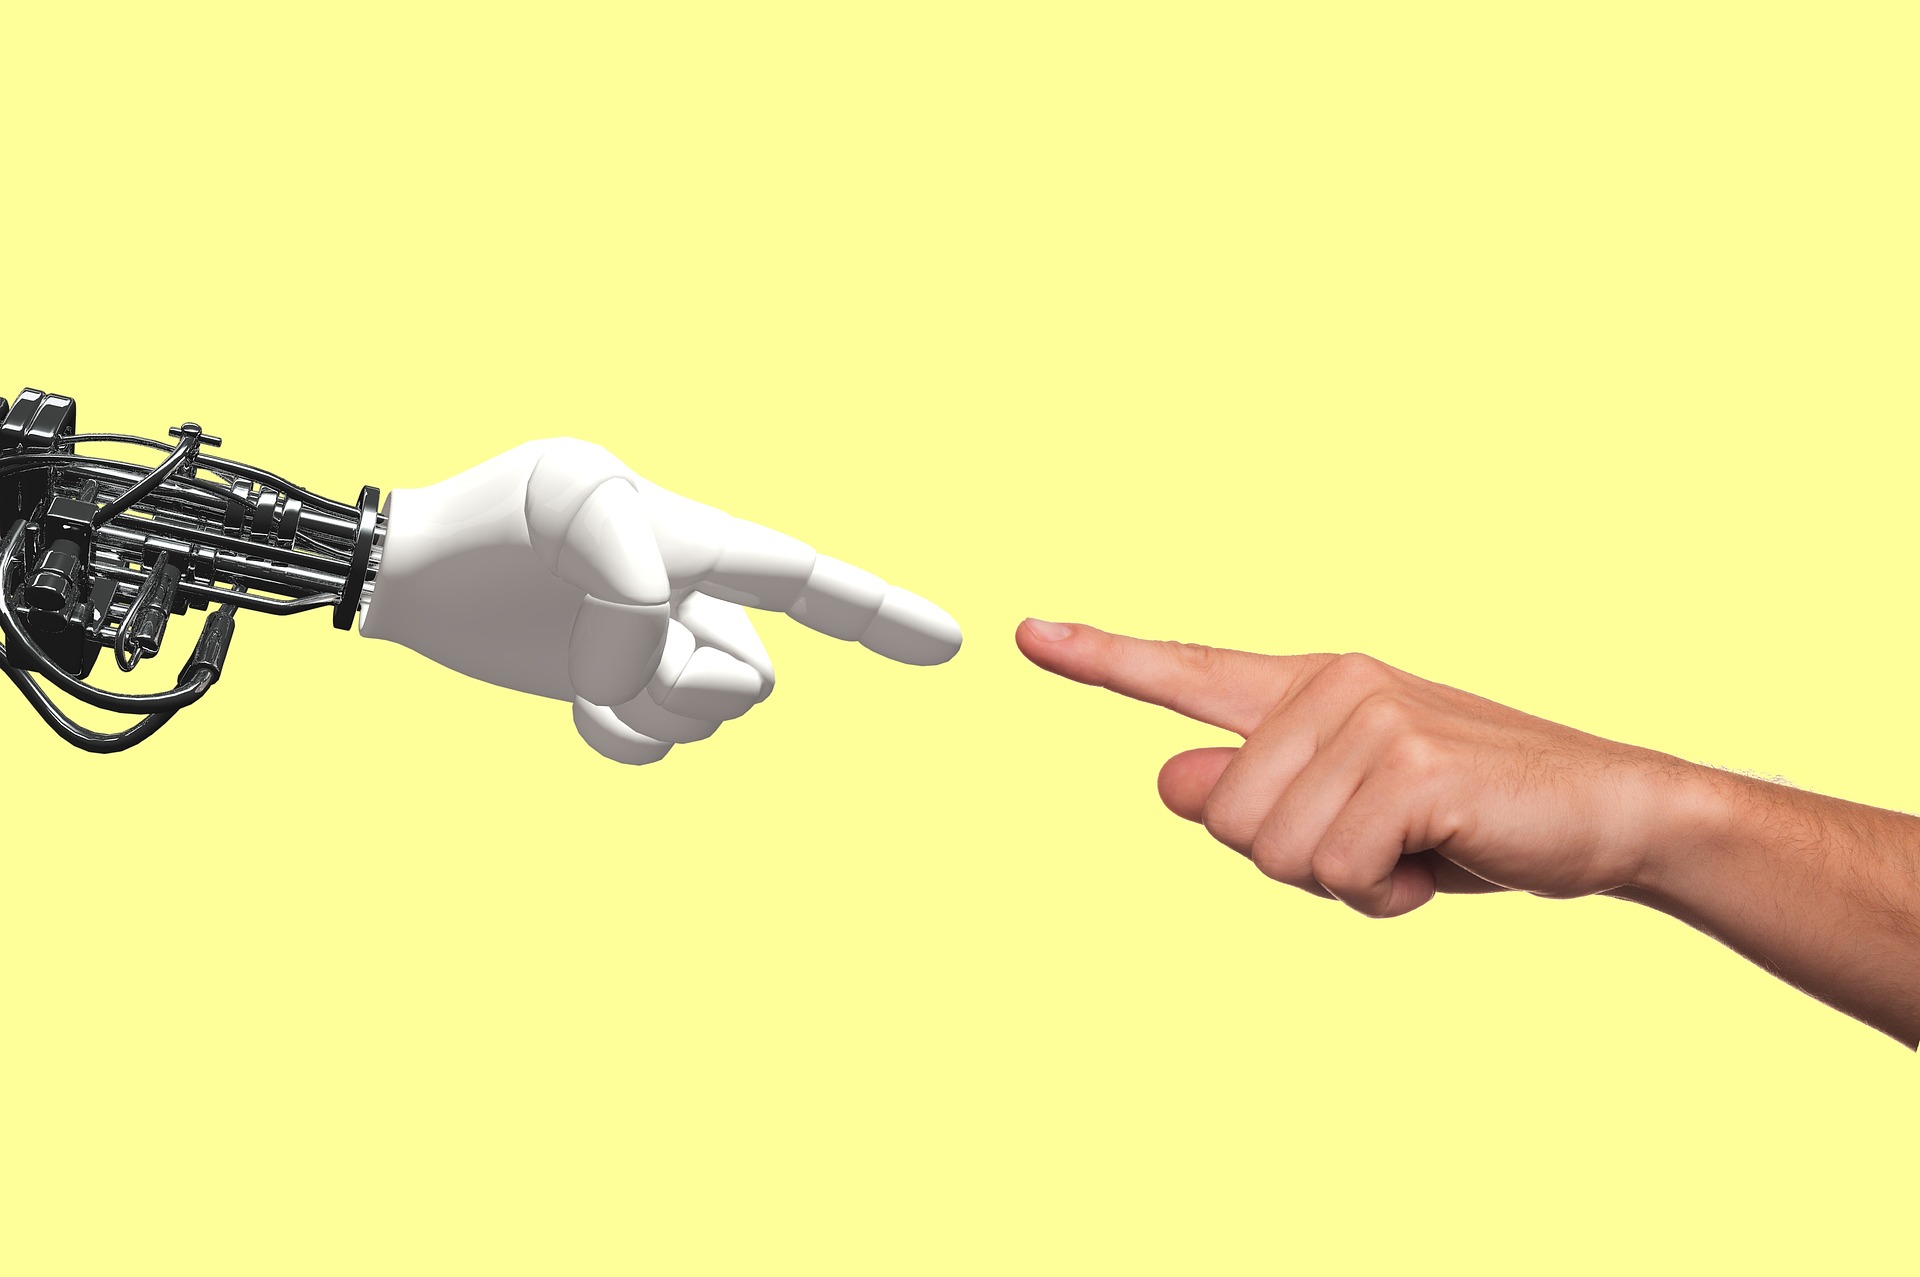 El 90% de las empresas habrán implantado la robótica en 2022